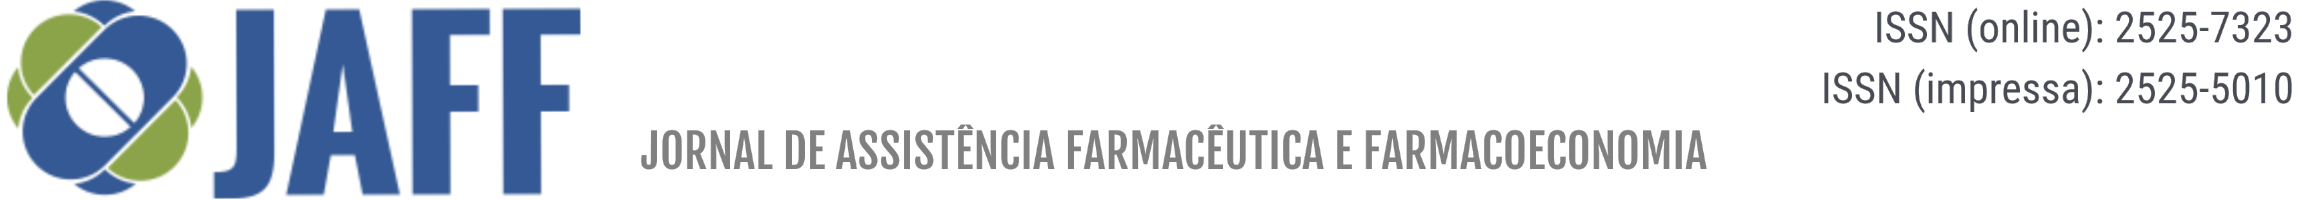 JORNAL DE ASSISTÊNCIA FARMACÊUTICA E FARMACOECONOMIA